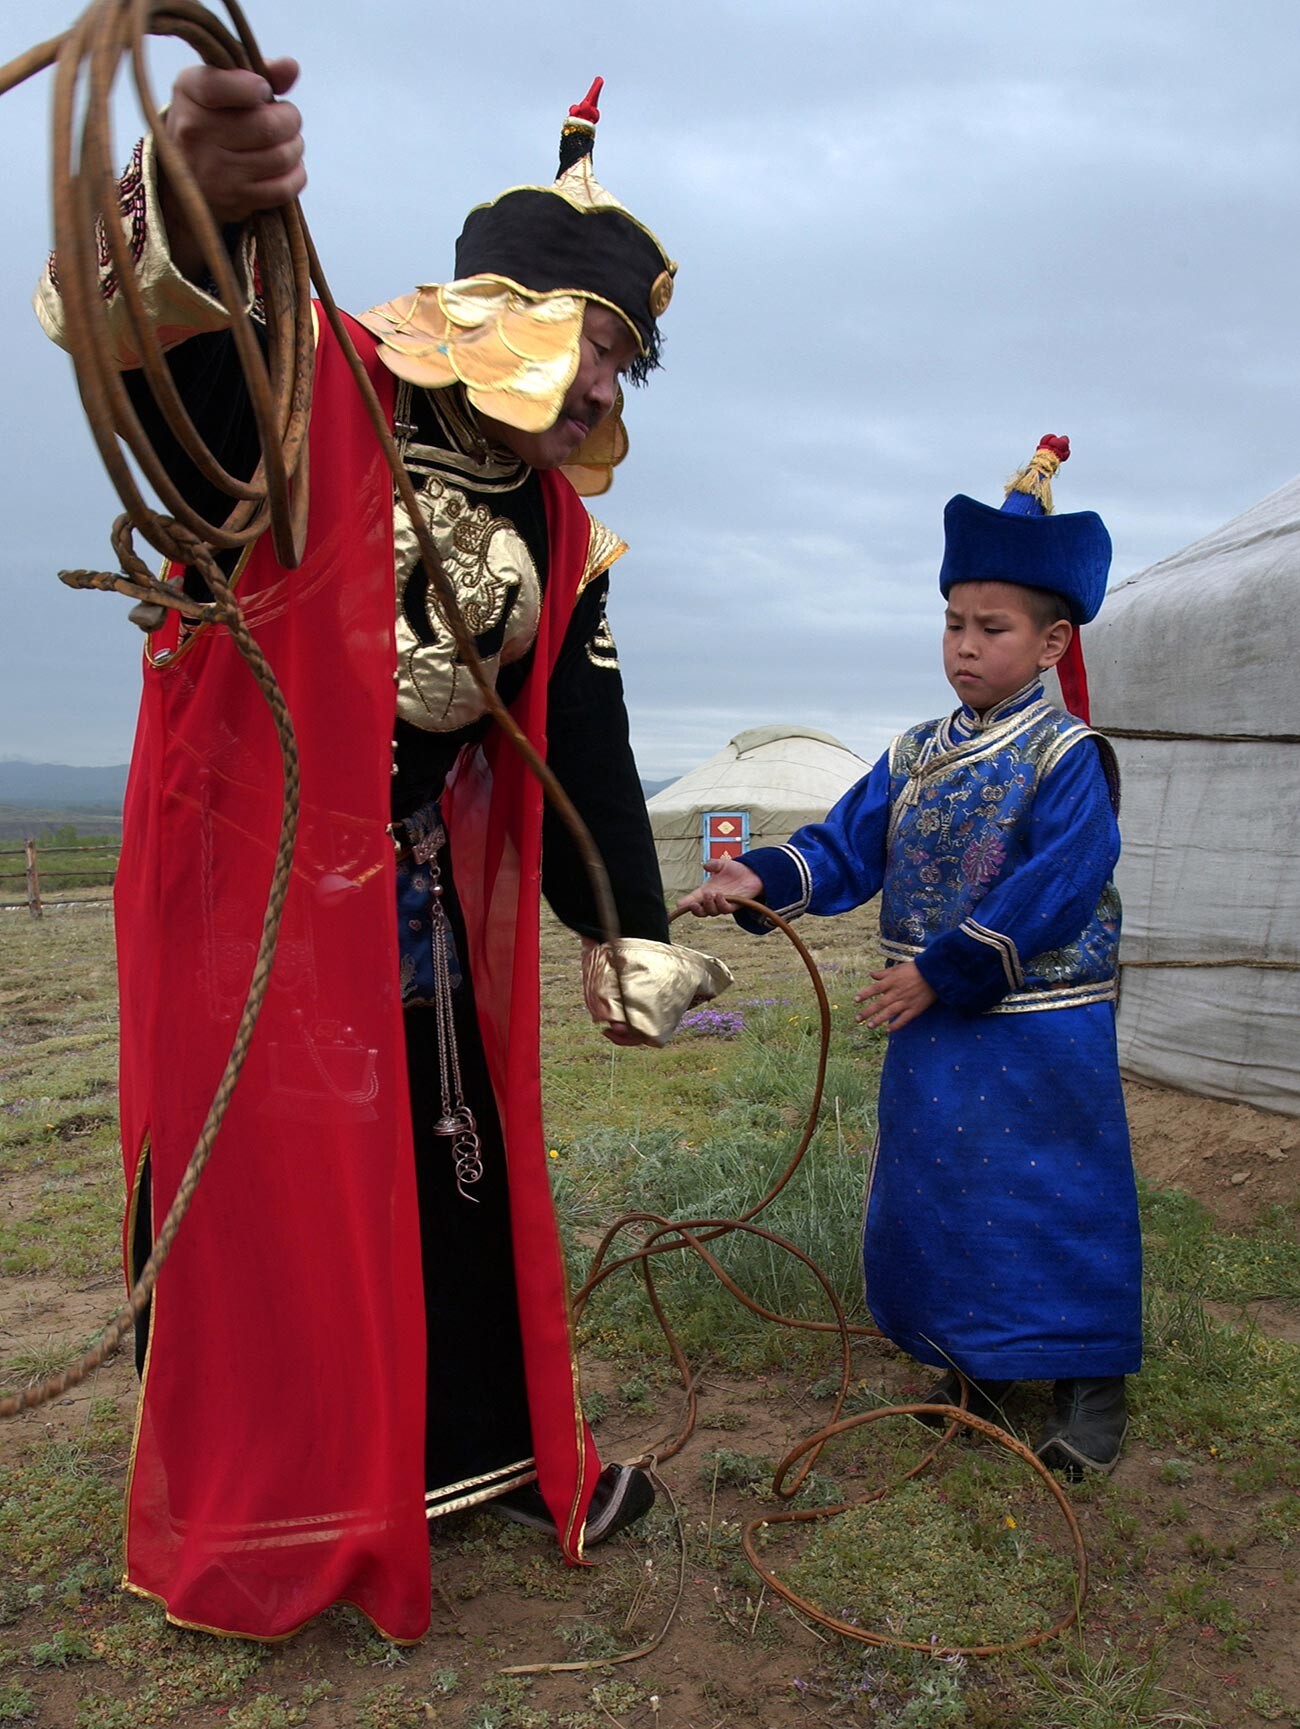 Iouri Koudriachov. Traditions ancestrales en République de Touva, dans le sud de la Sibérie

